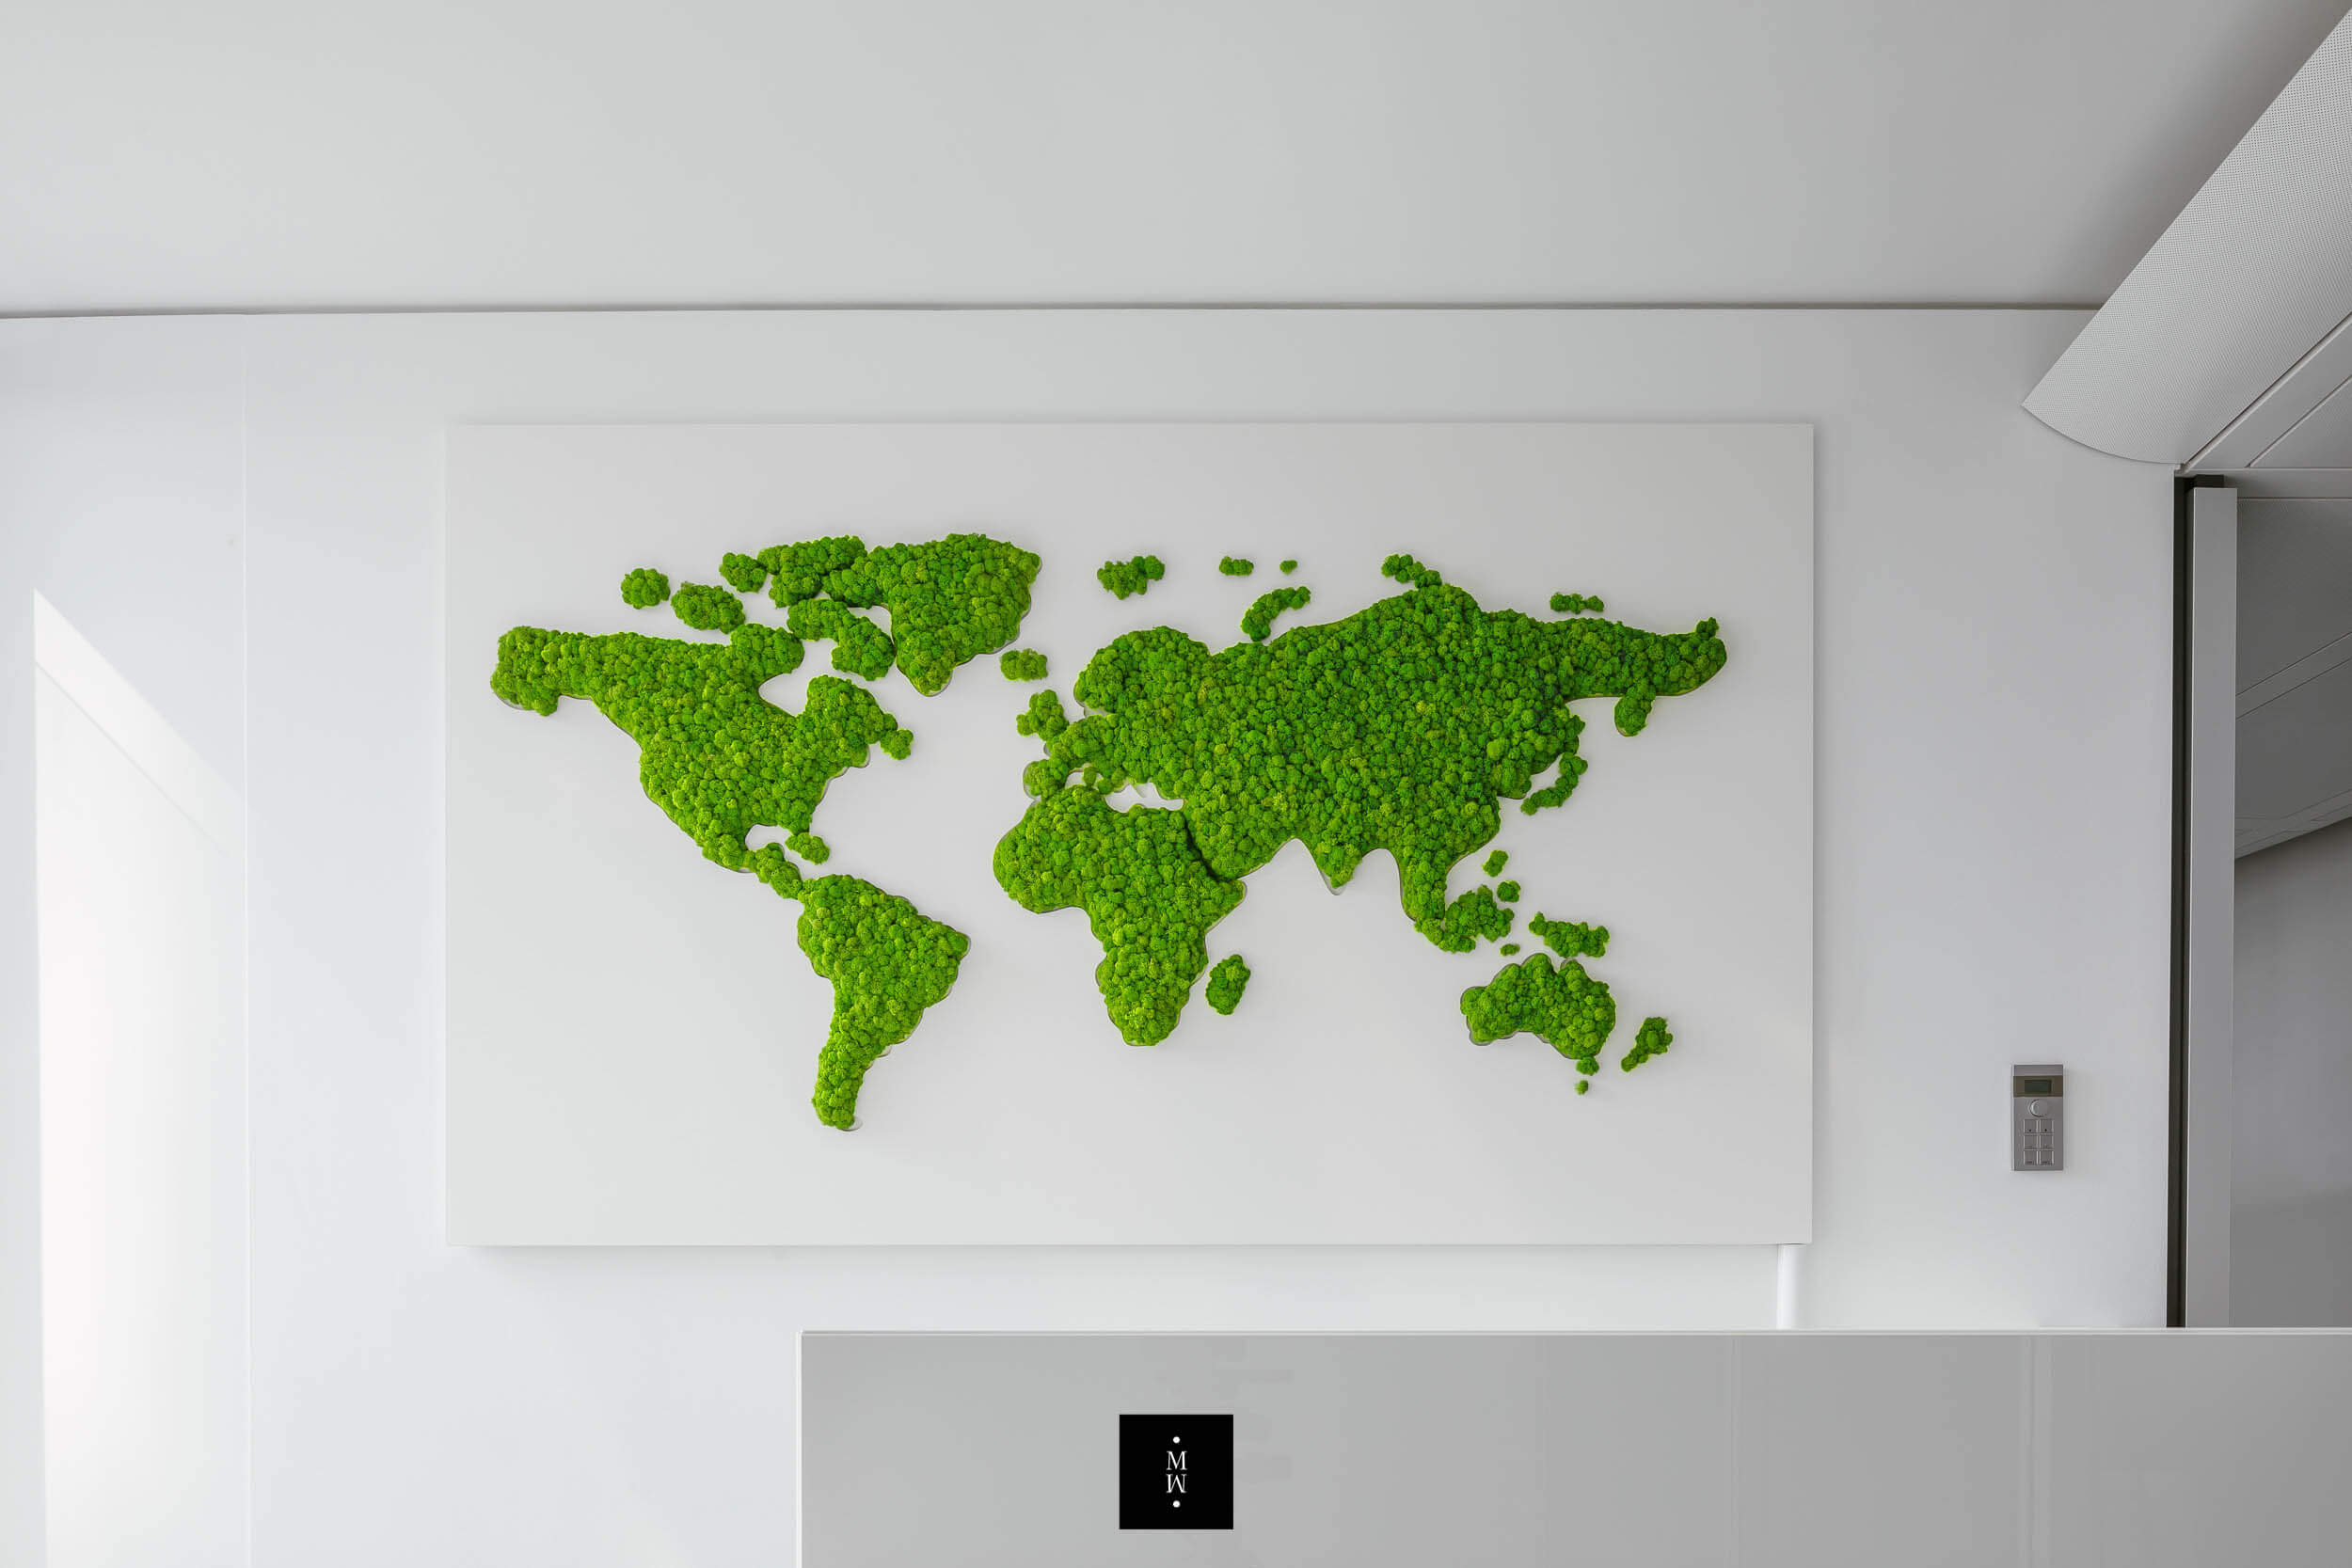 Moosbild aus Islandmoos als Weltkarte in einem Büro